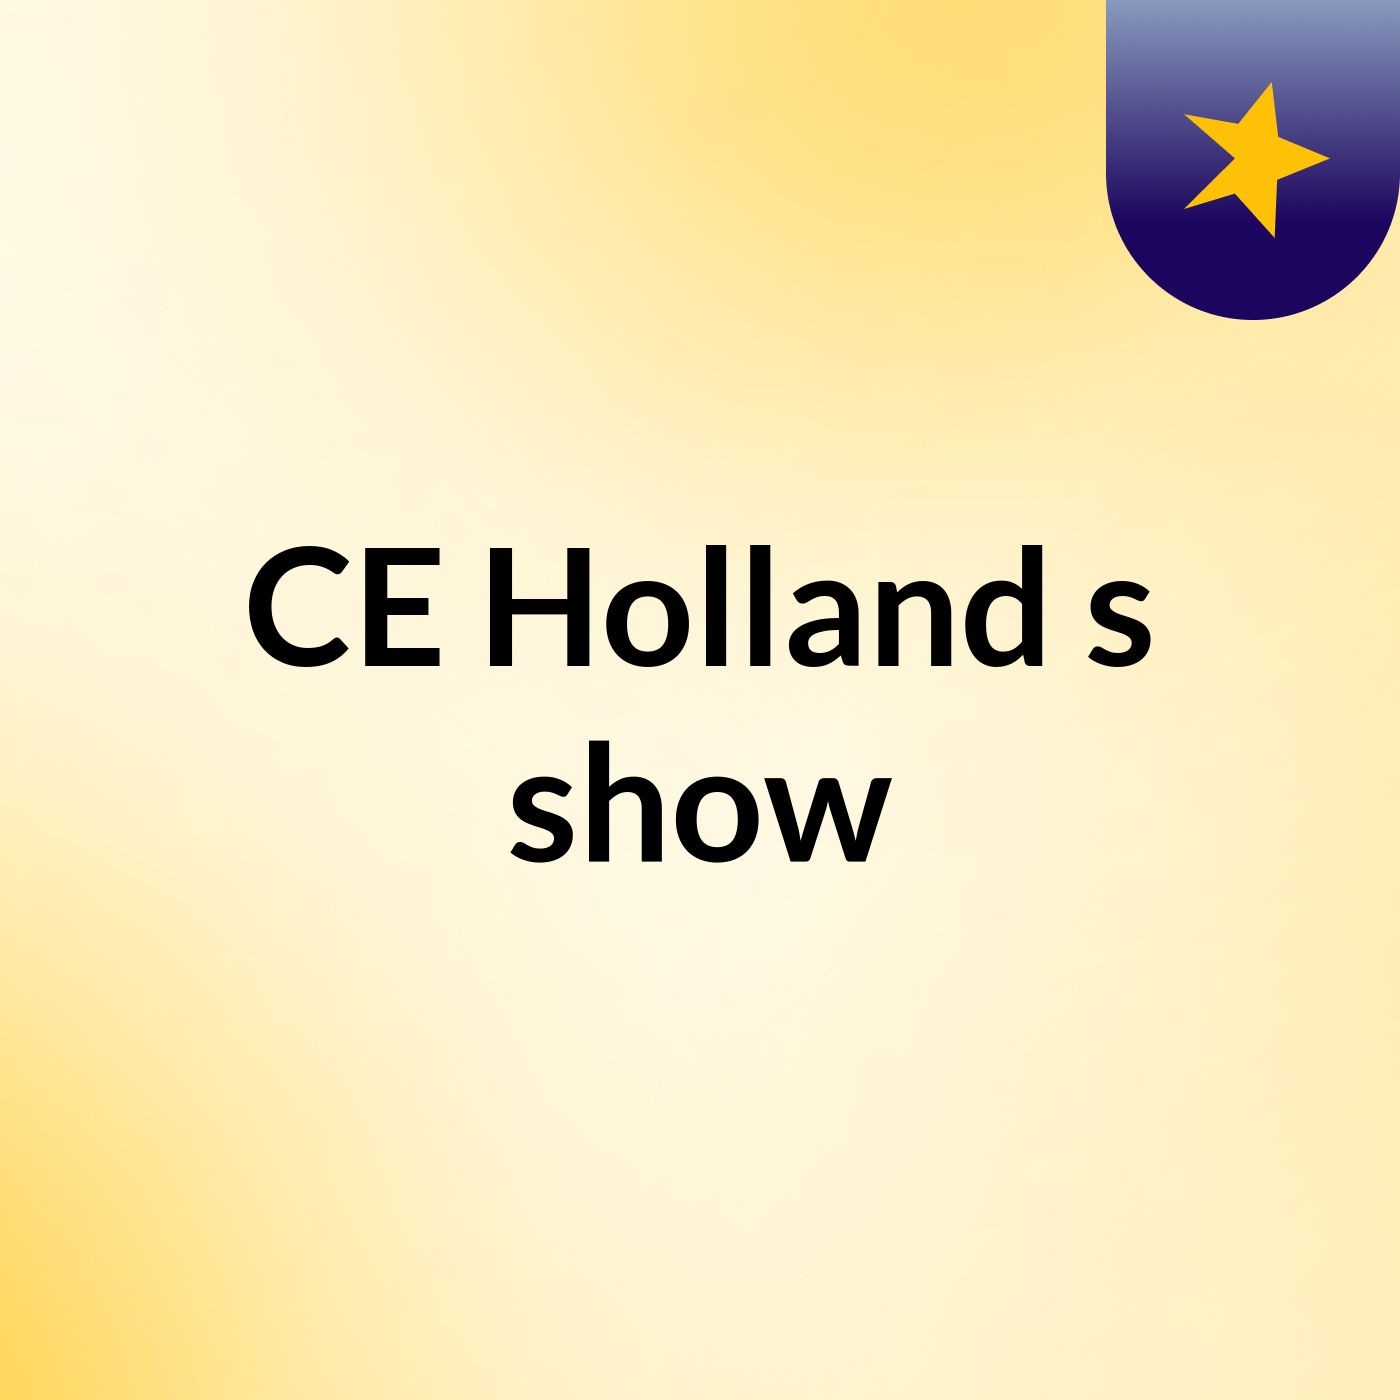 CE Holland's show